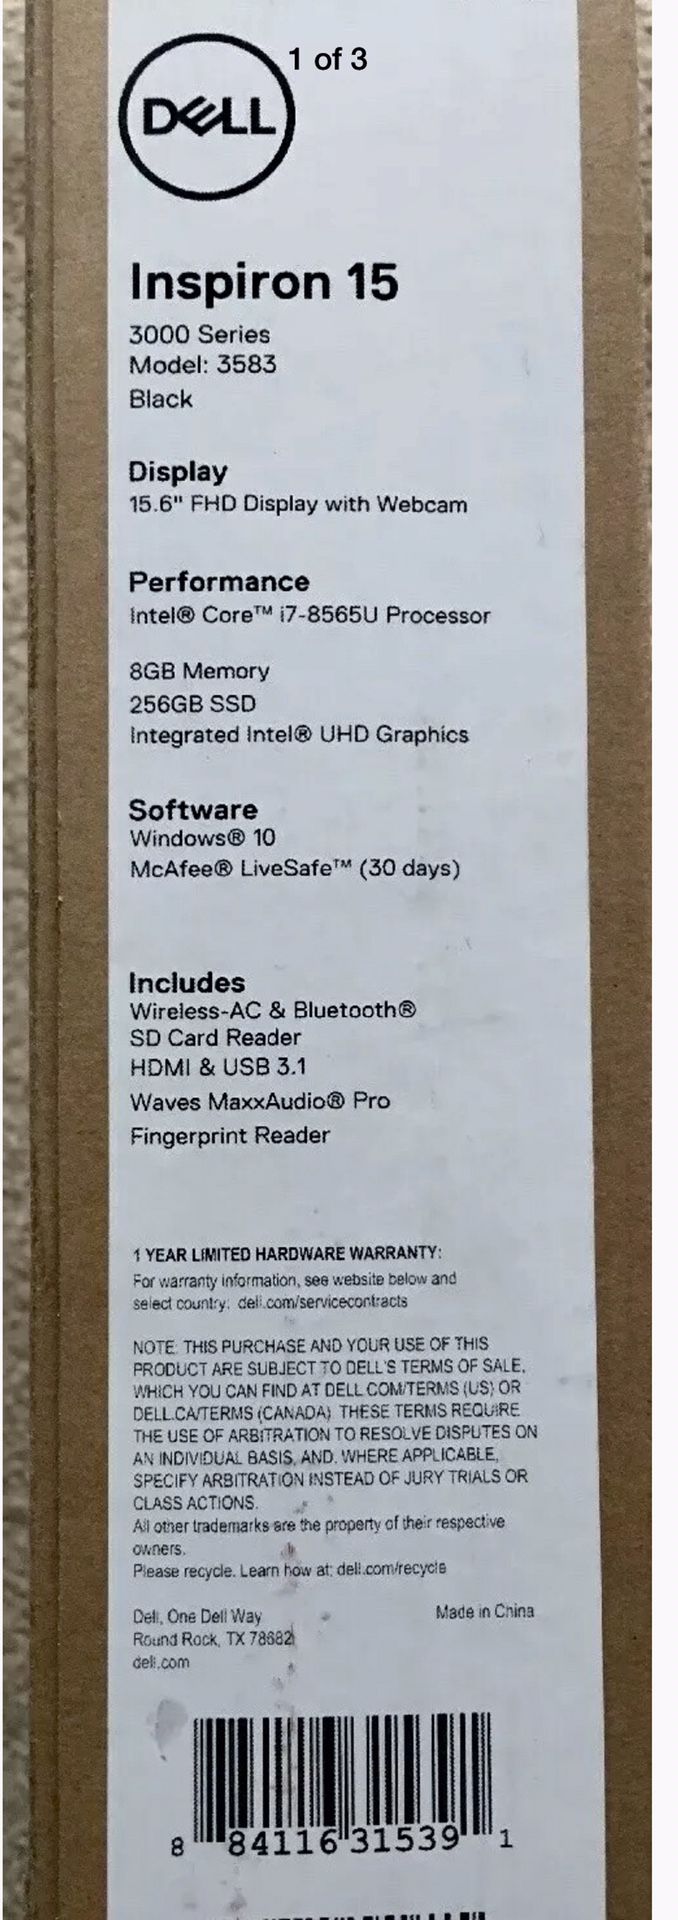 NEW IN BOX Dell Inspiron 15 Model 3583 BLK 15.6" Laptop Intel Quad Core i7-8565U